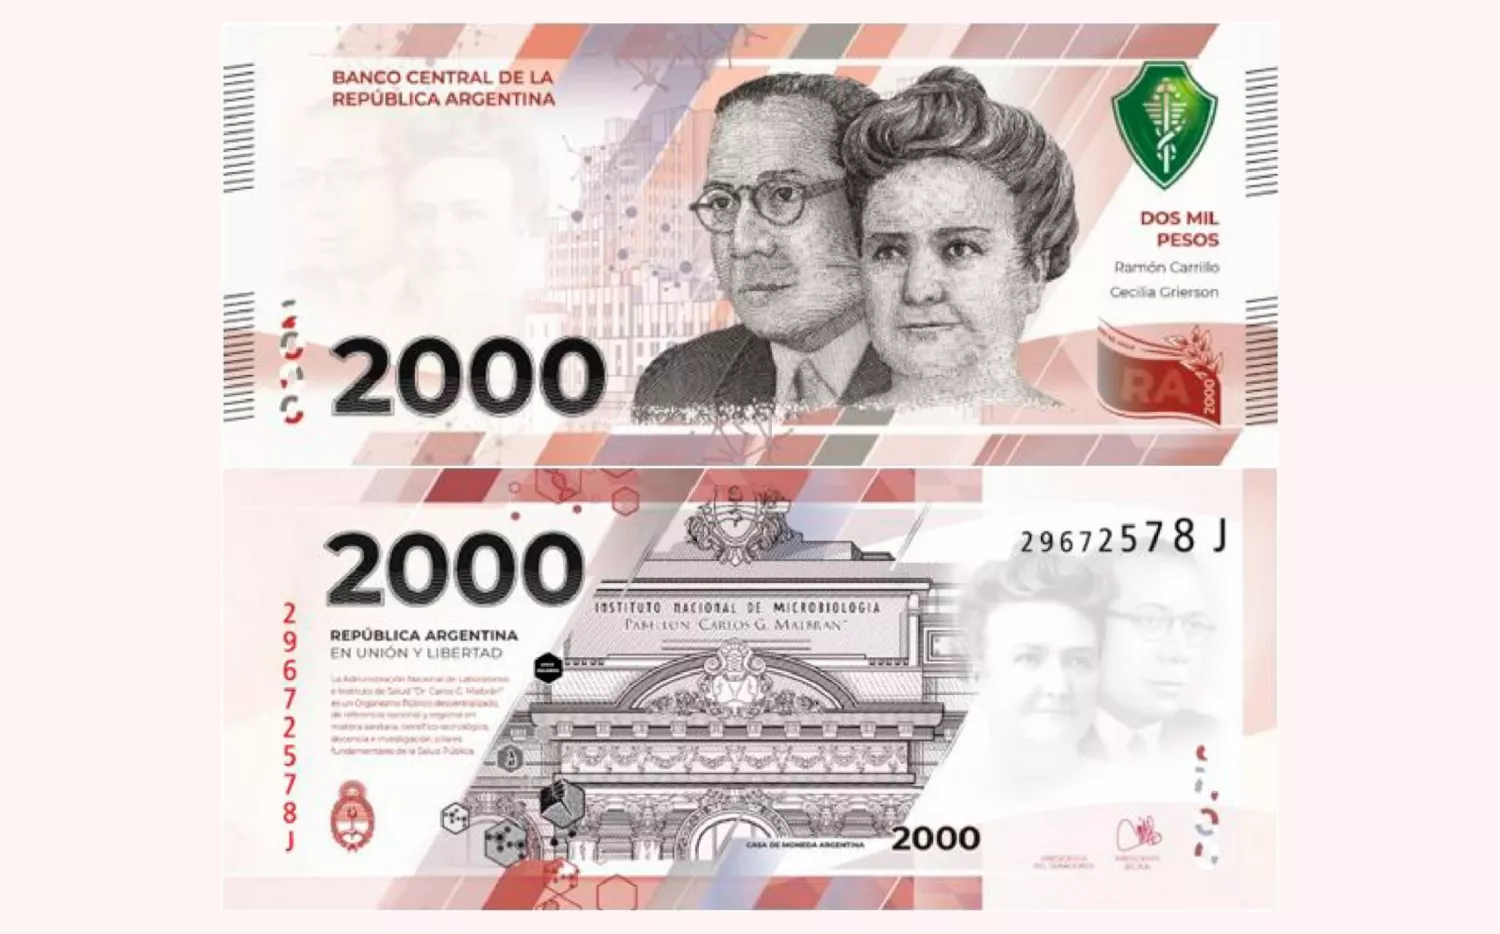 Habrá un nuevo billete de 2000 pesos: ¿son buenas o malas noticias?